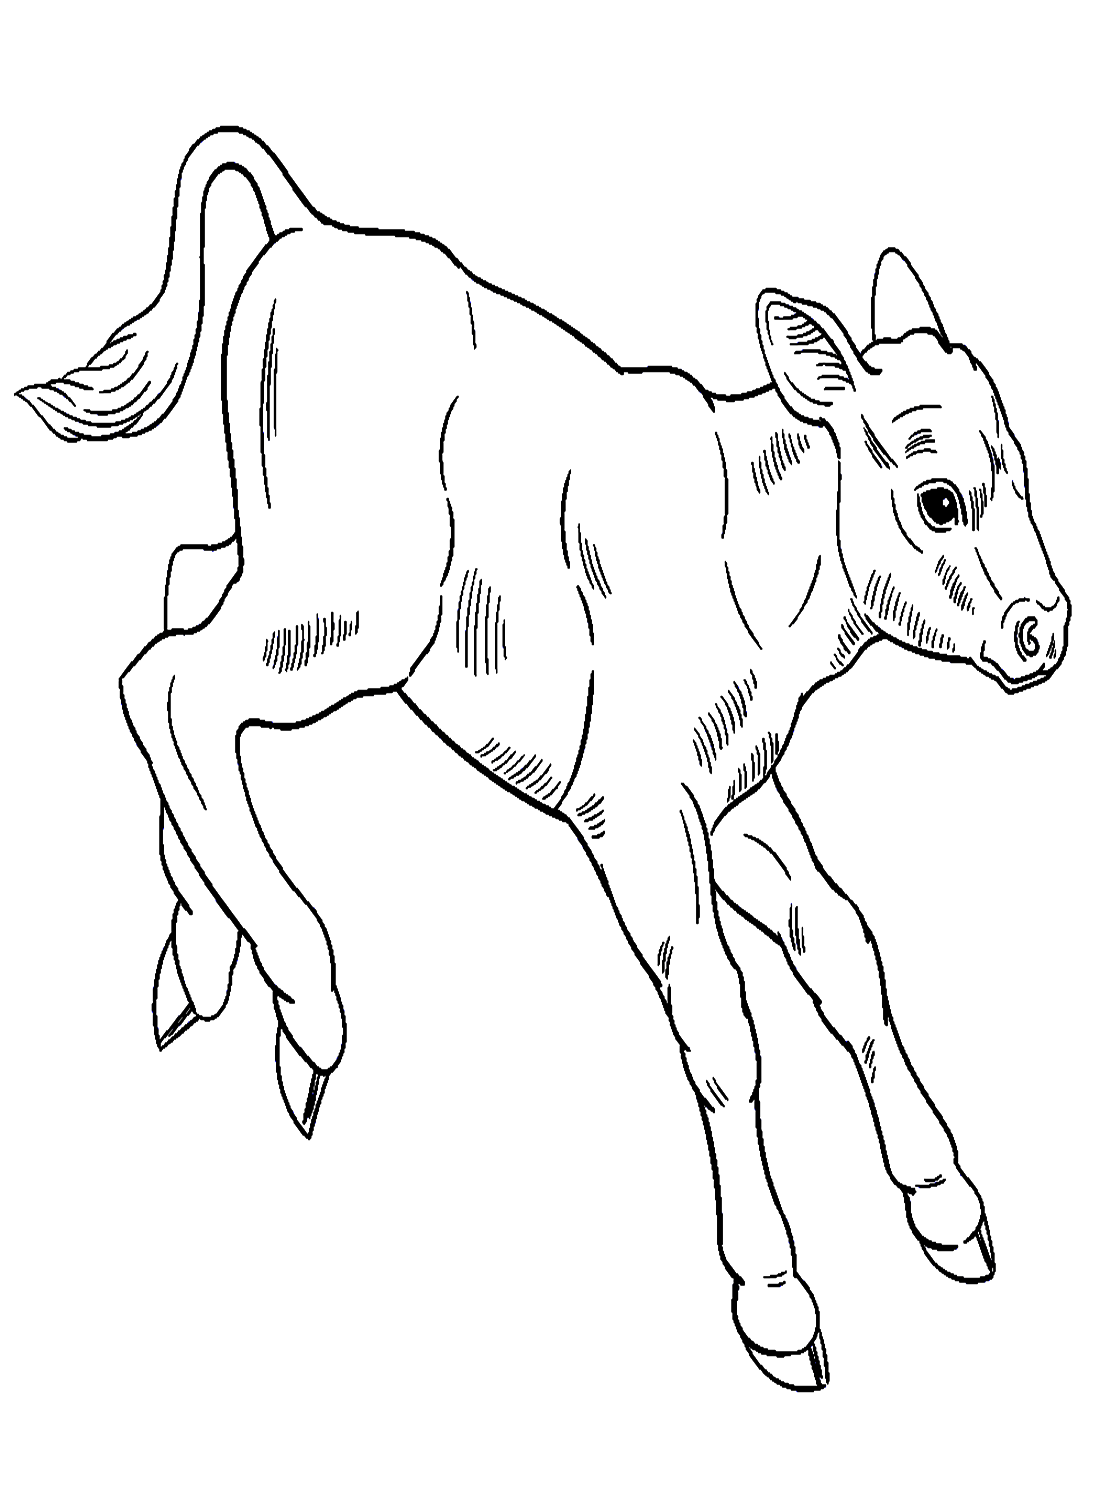 Il vitello salta dal polpaccio